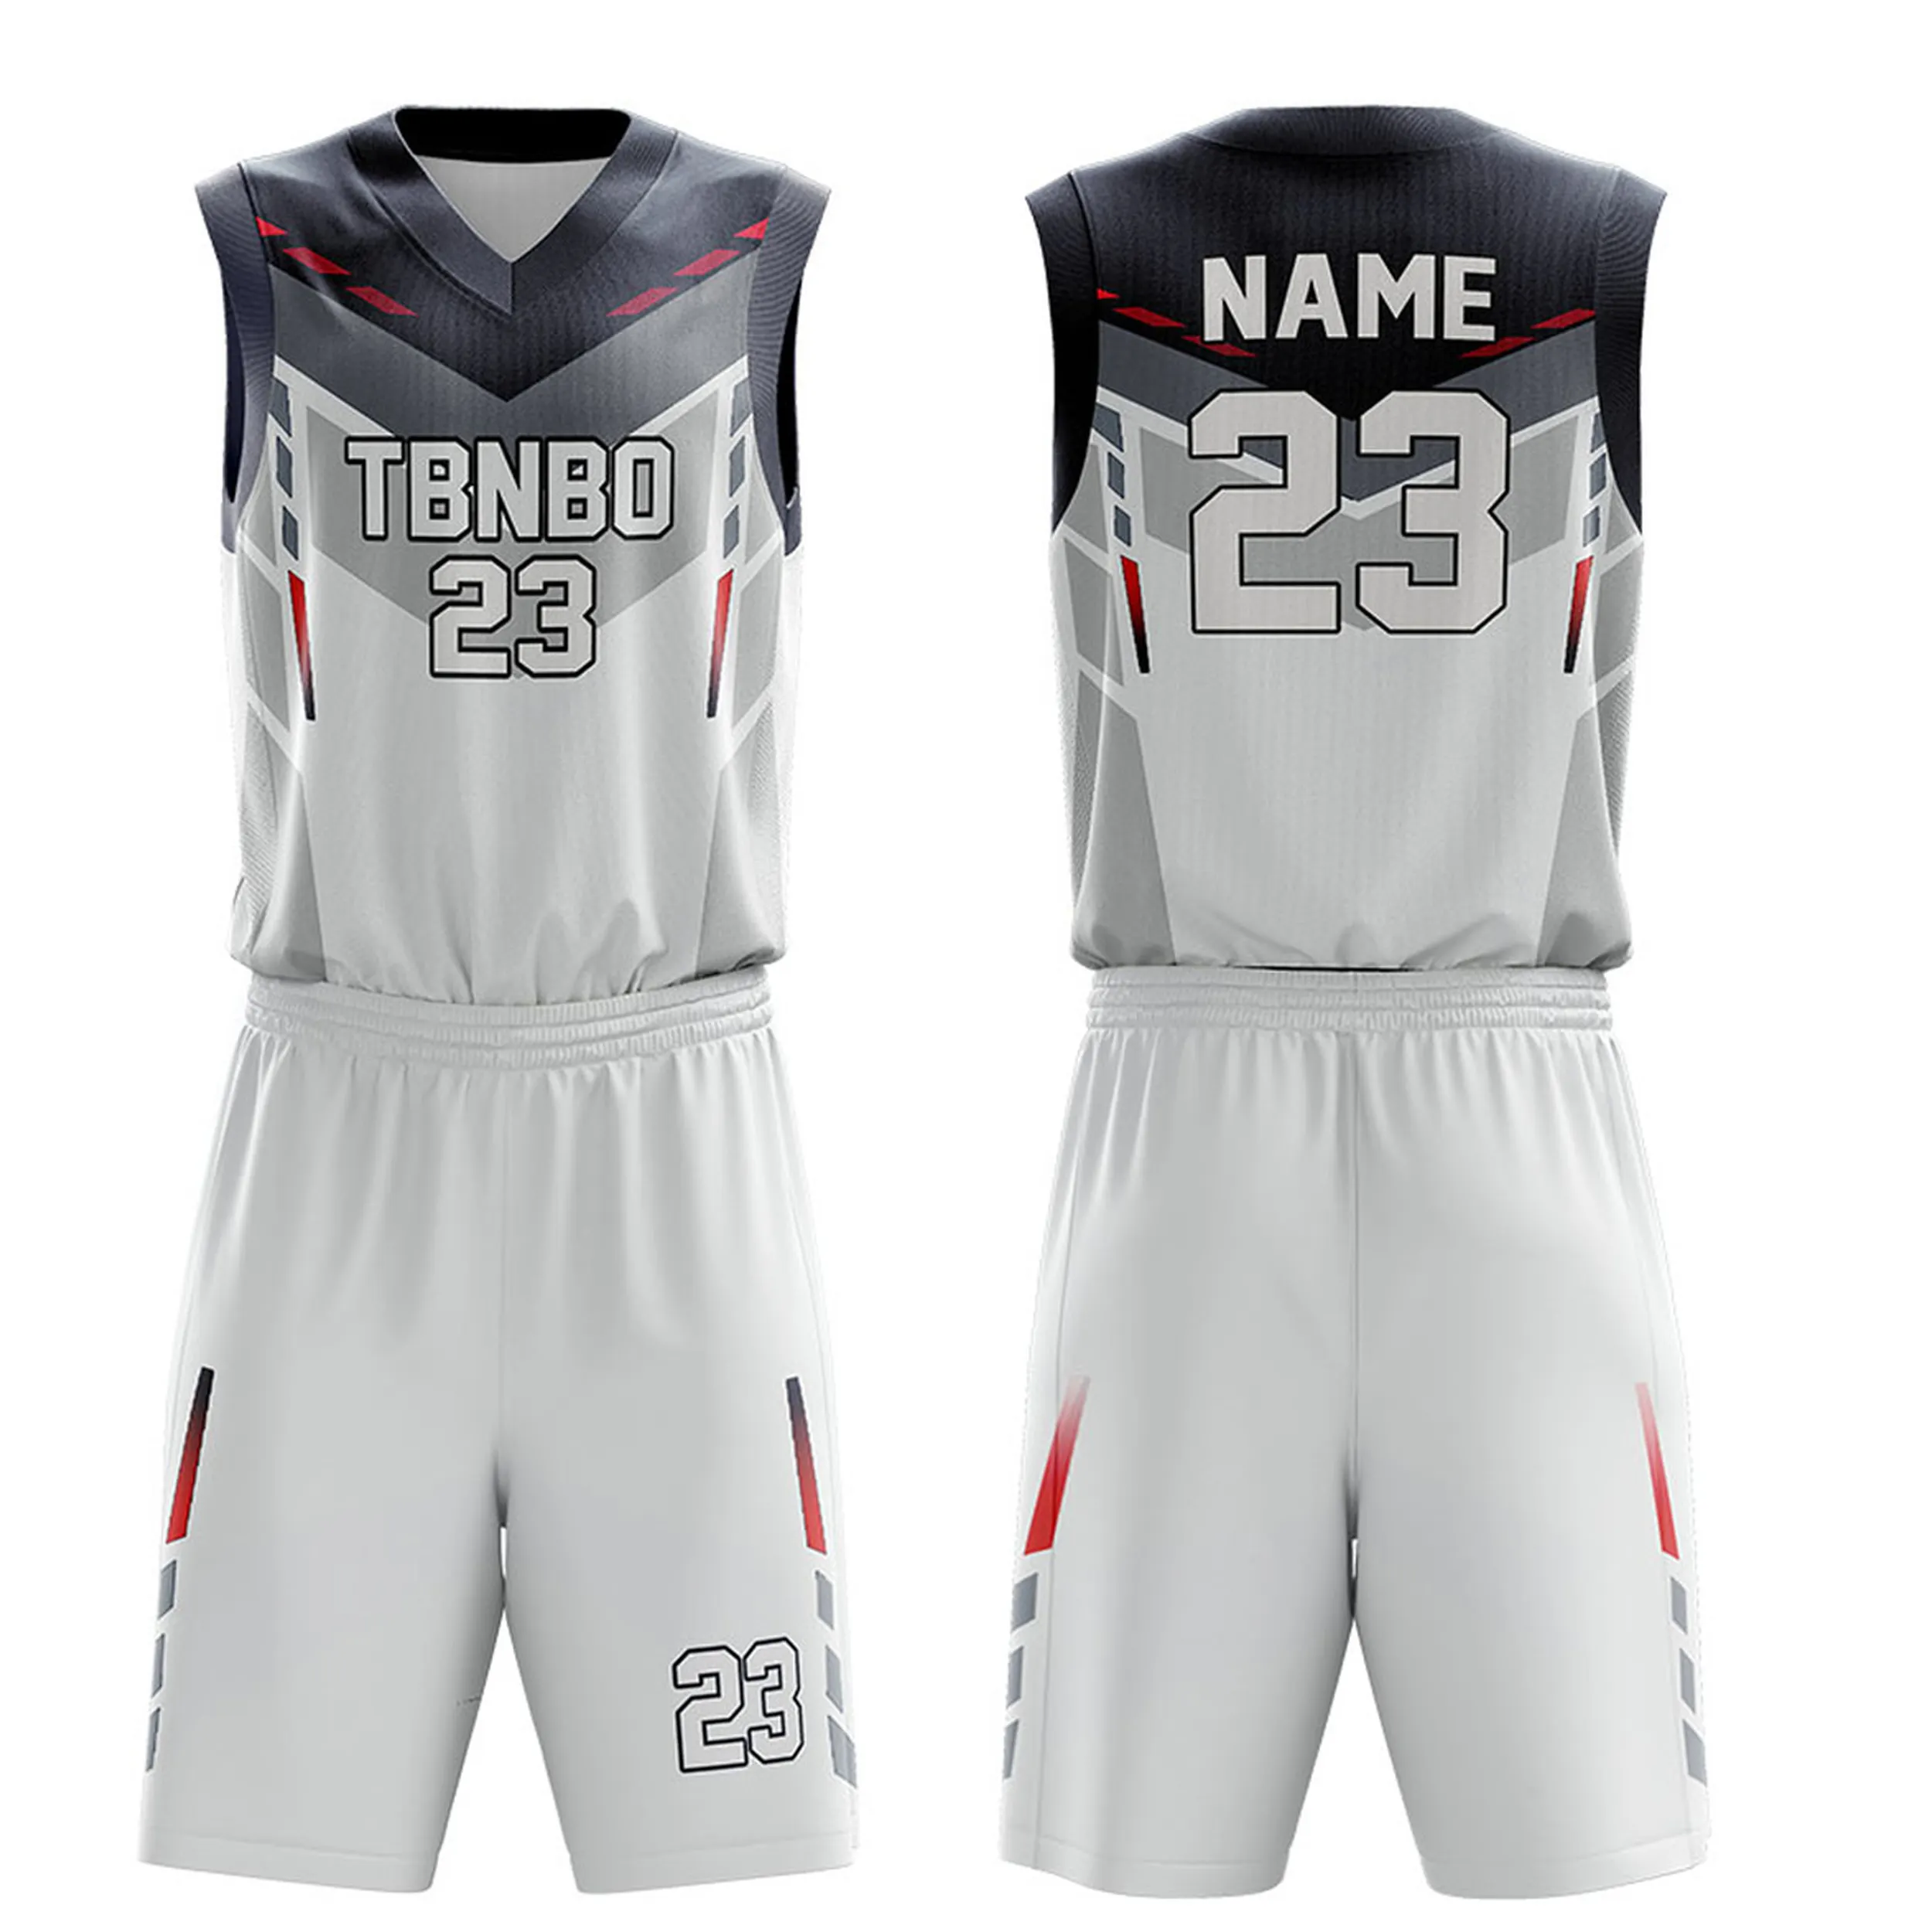 도매 좋은 품질 빠른 건조 100% 폴리 에스터 농구 유니폼 세트 사용자 정의 팀 농구 유니폼 사용자 정의 디자인 유니폼